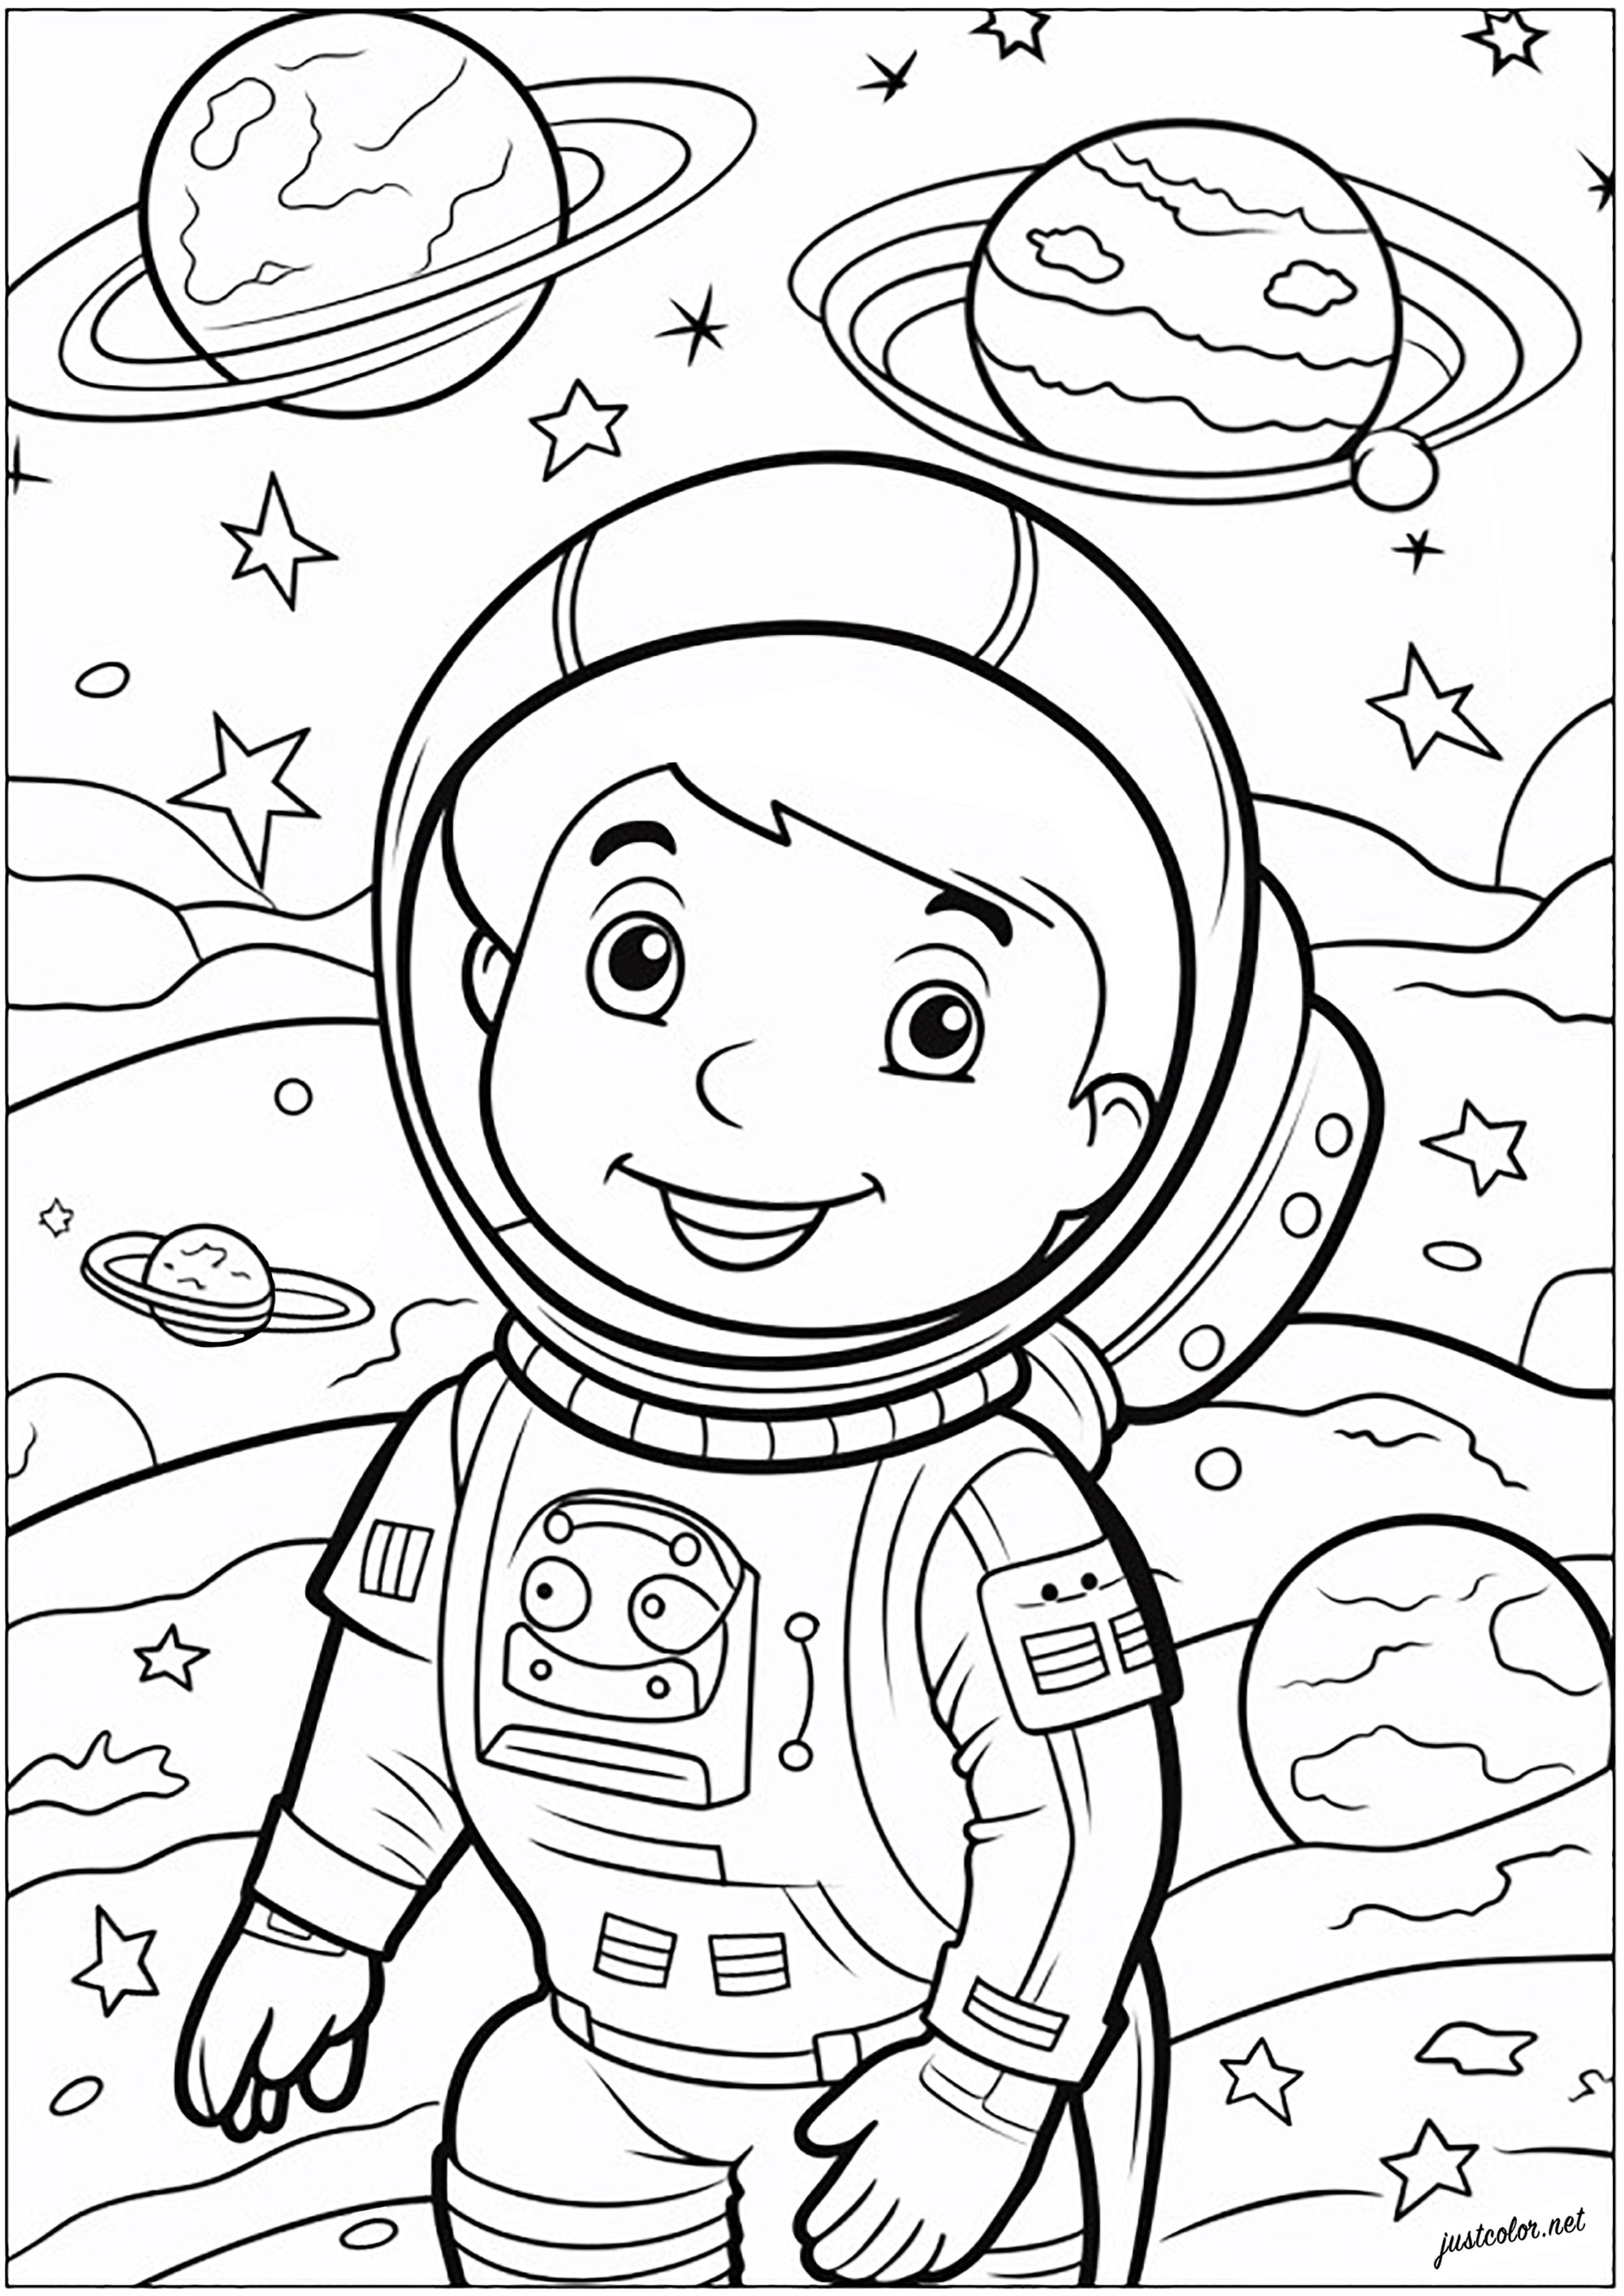 Coloriage d'un petit astronaute. Jeune astronaute représenté dans l'espace, flottant parmi les étoiles et les planètes